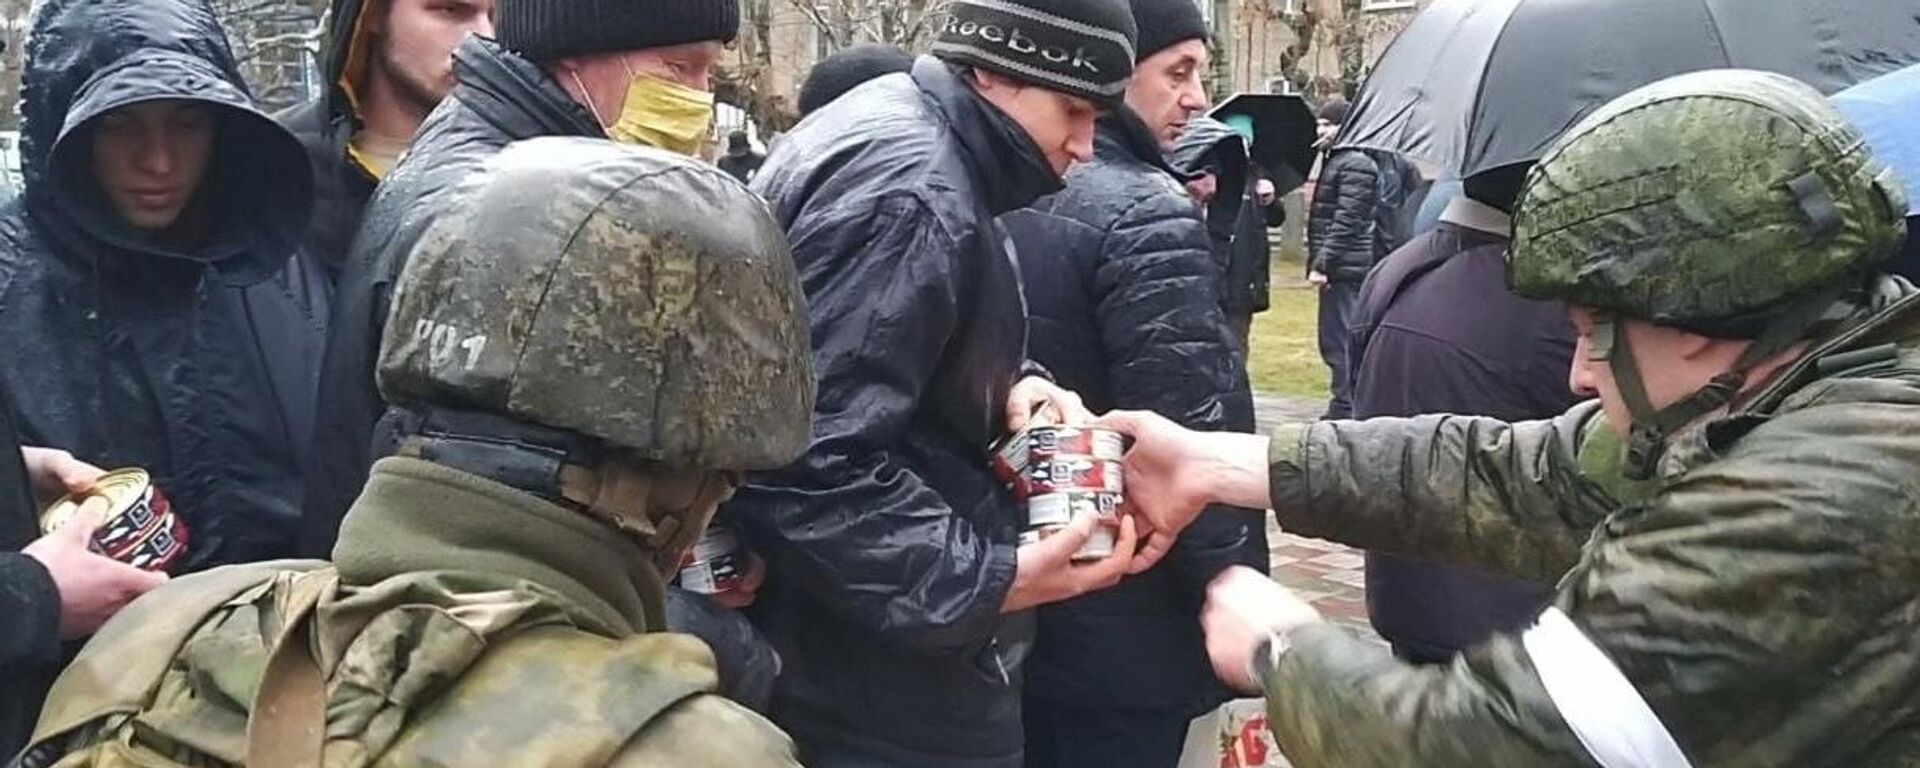 La ayuda humanitaria de las fuerzas rusas a los ciudadanos civiles durante la operación especial de desmilitarización y desnazificación en Ucrania - Sputnik Mundo, 1920, 12.03.2022